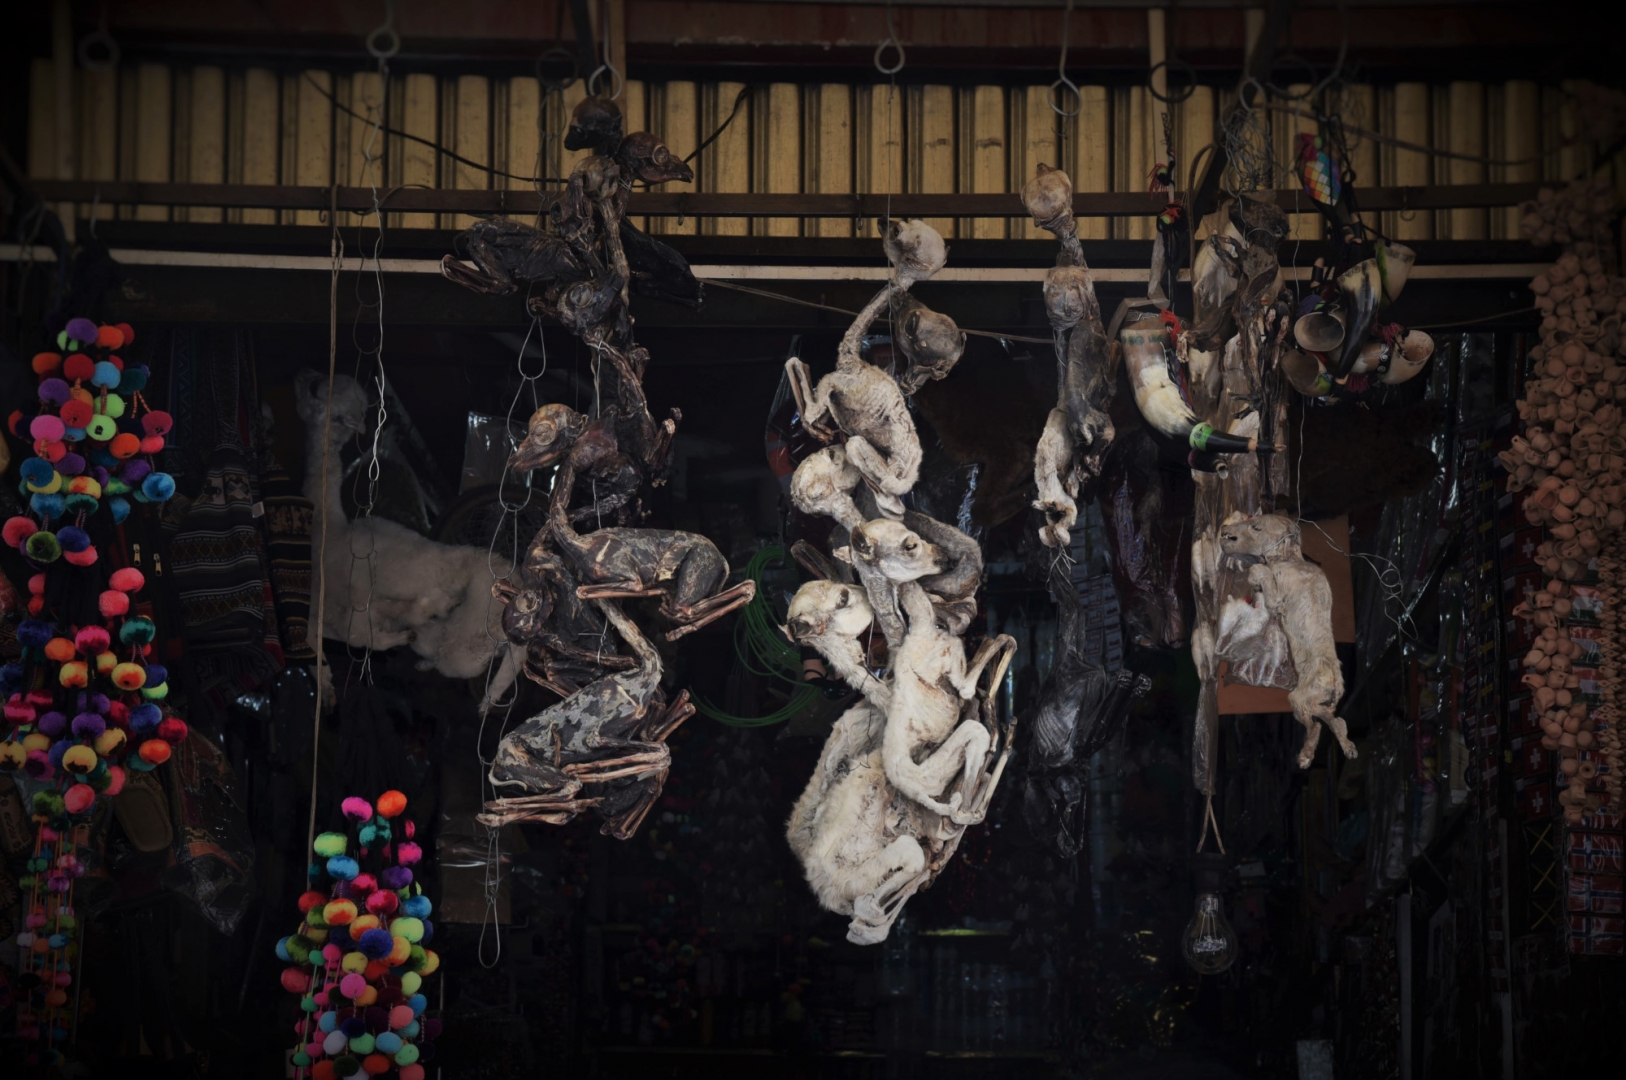 Ассортимент рынка Ведьм весьма необычен для европейского туриста: мумии зародышей и эмбрионов животных. Ла Пас, Боливия